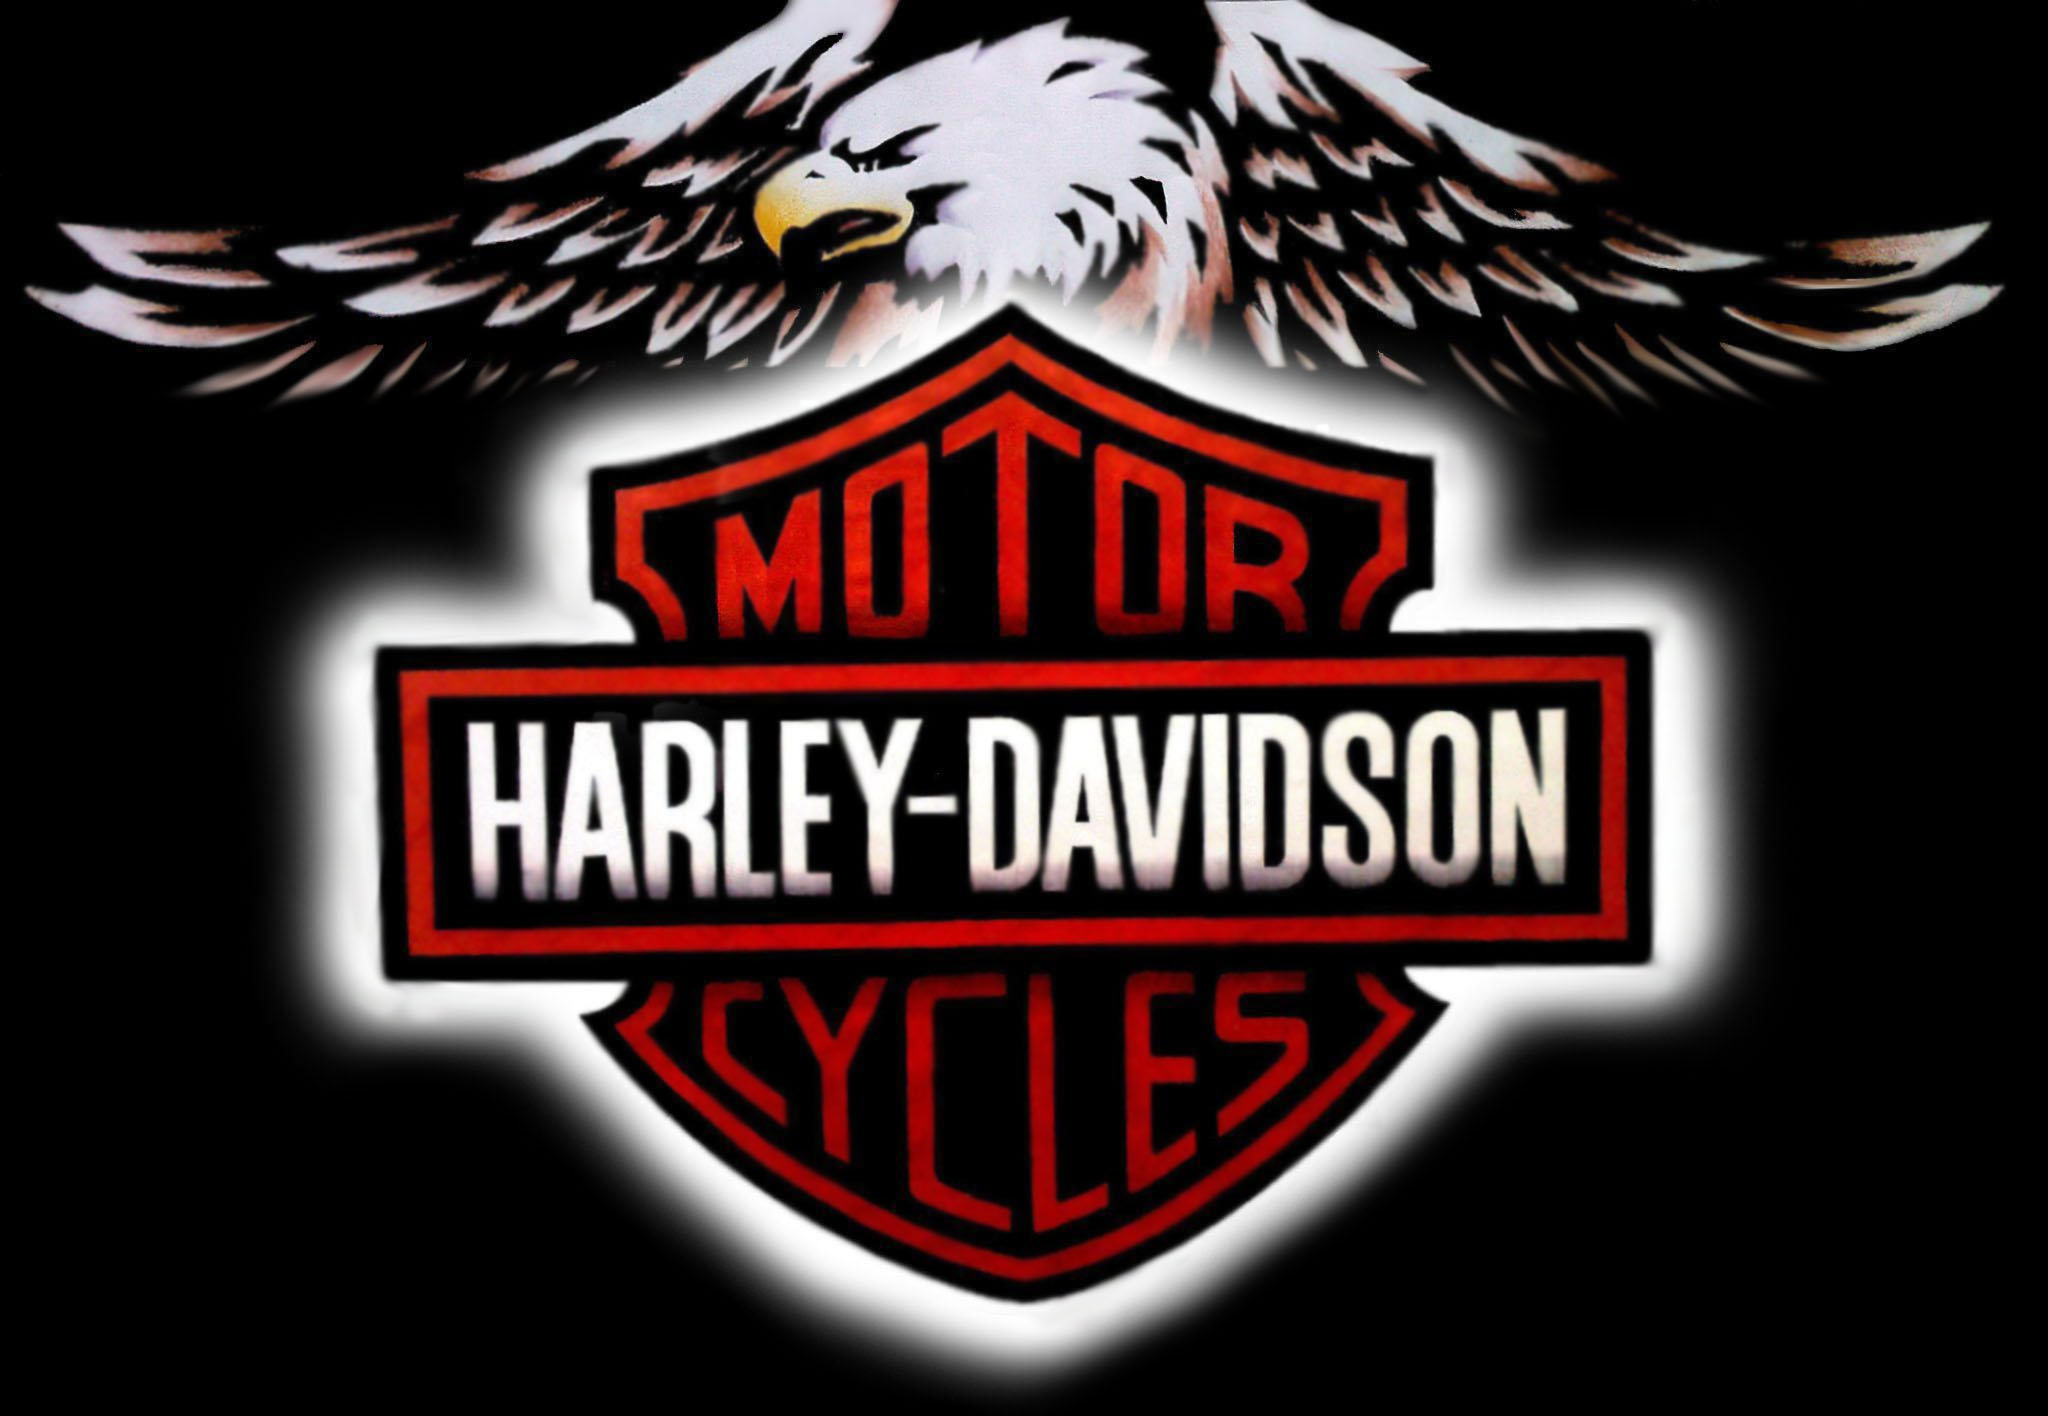 76 Harley Davidson Logo Wallpaper On Wallpapersafari